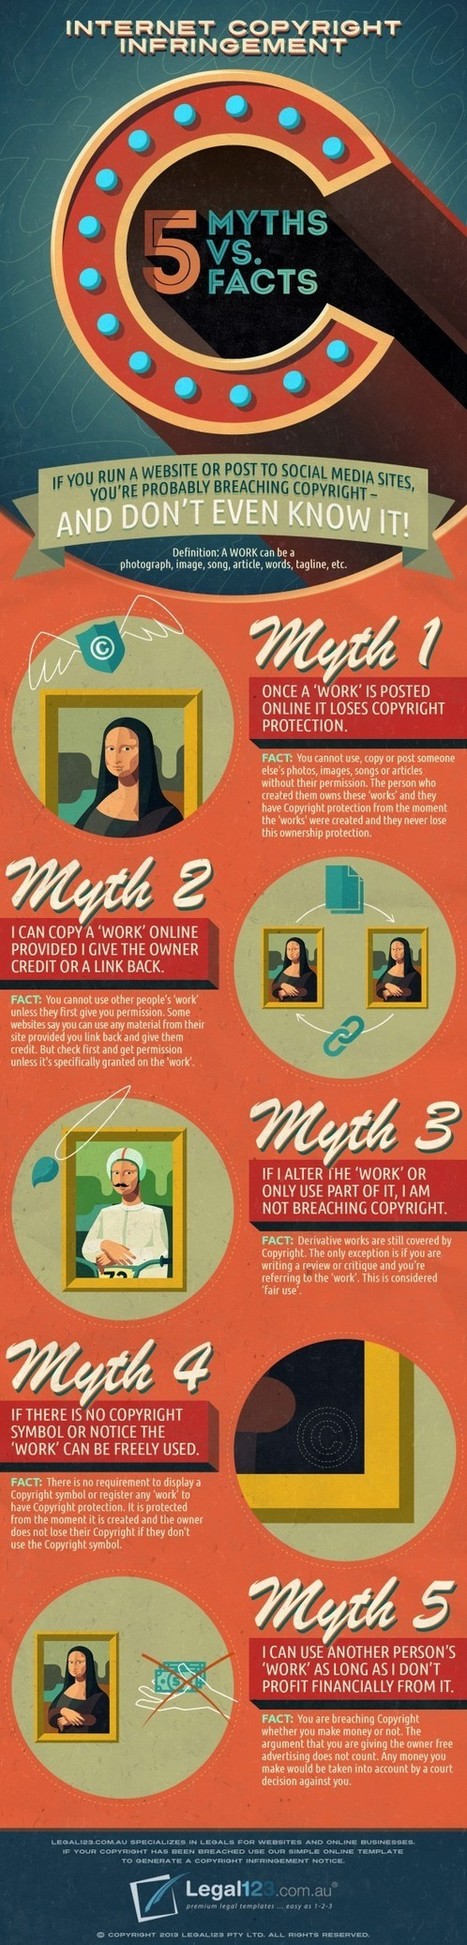 5 Mthys Vs. Facts About Copyright Infringement on the Internet | Education & Numérique | Scoop.it